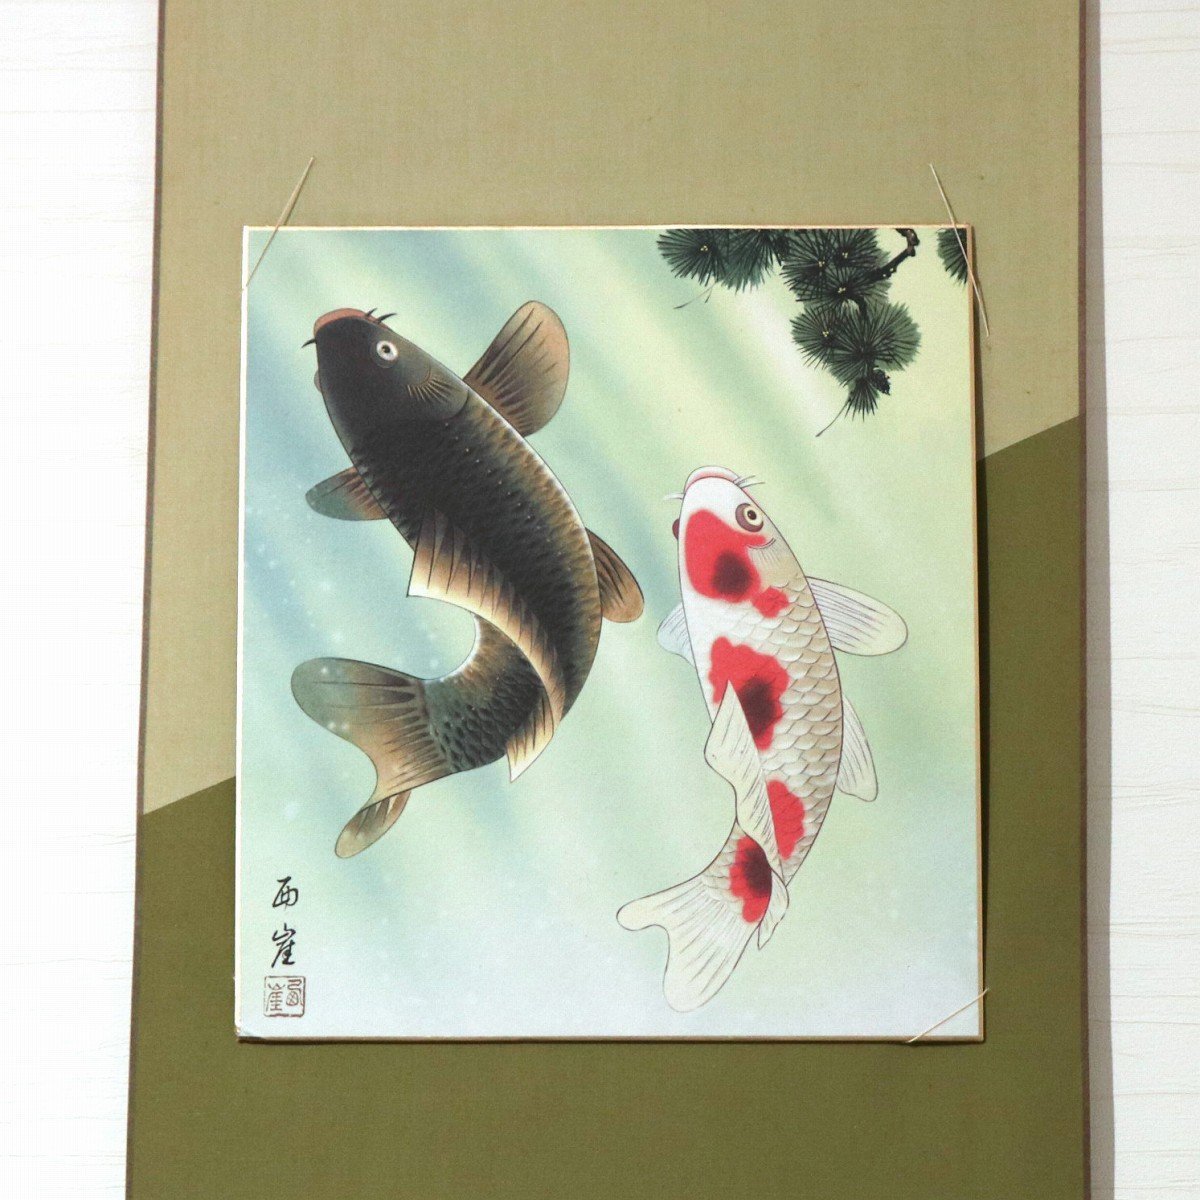 西崖・夫婦滝昇鯉・色紙掛け・開運・印刷・No.200926-189・梱包サイズ100_画像2